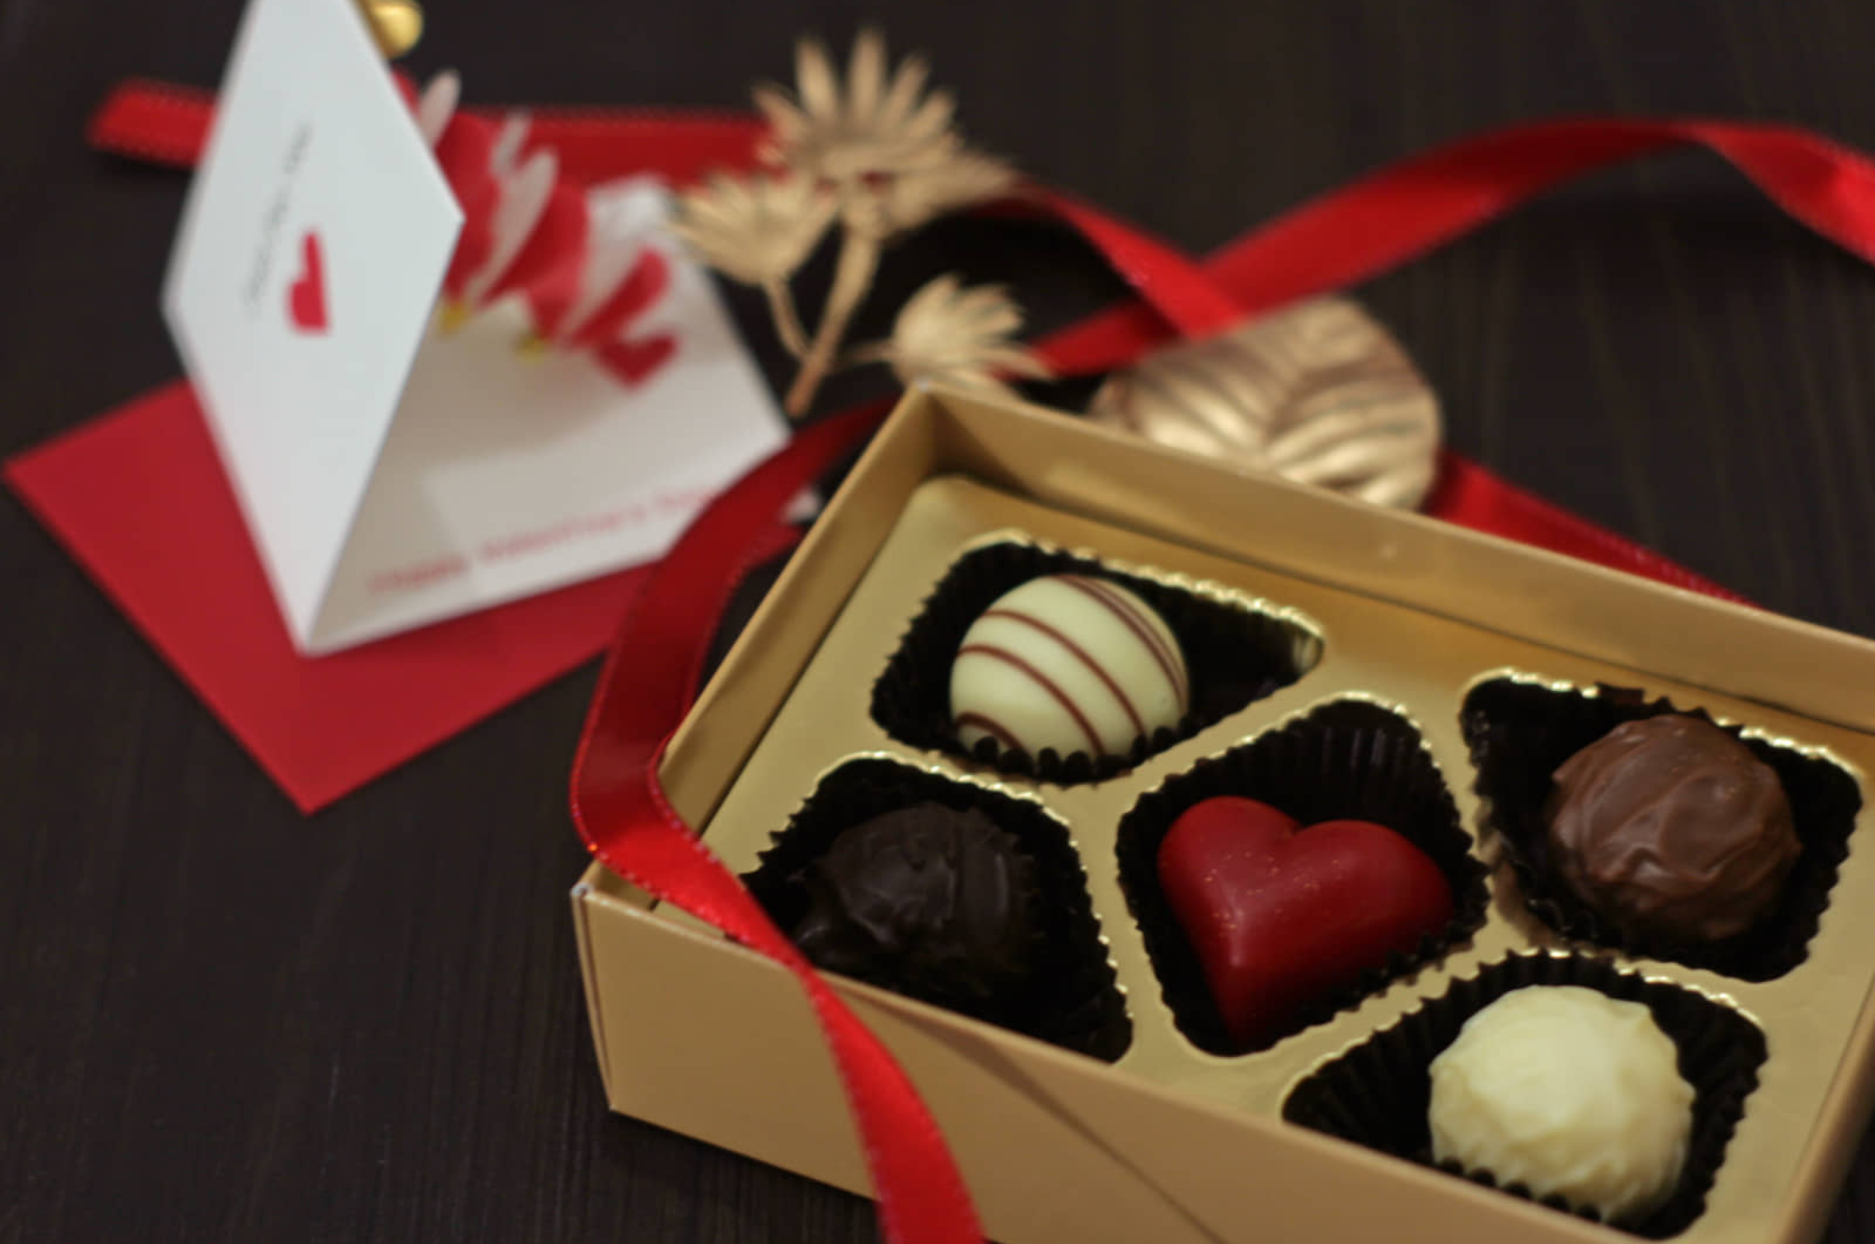 Chocolate là món quà ngày tình nhân quan trọng tại Nhật